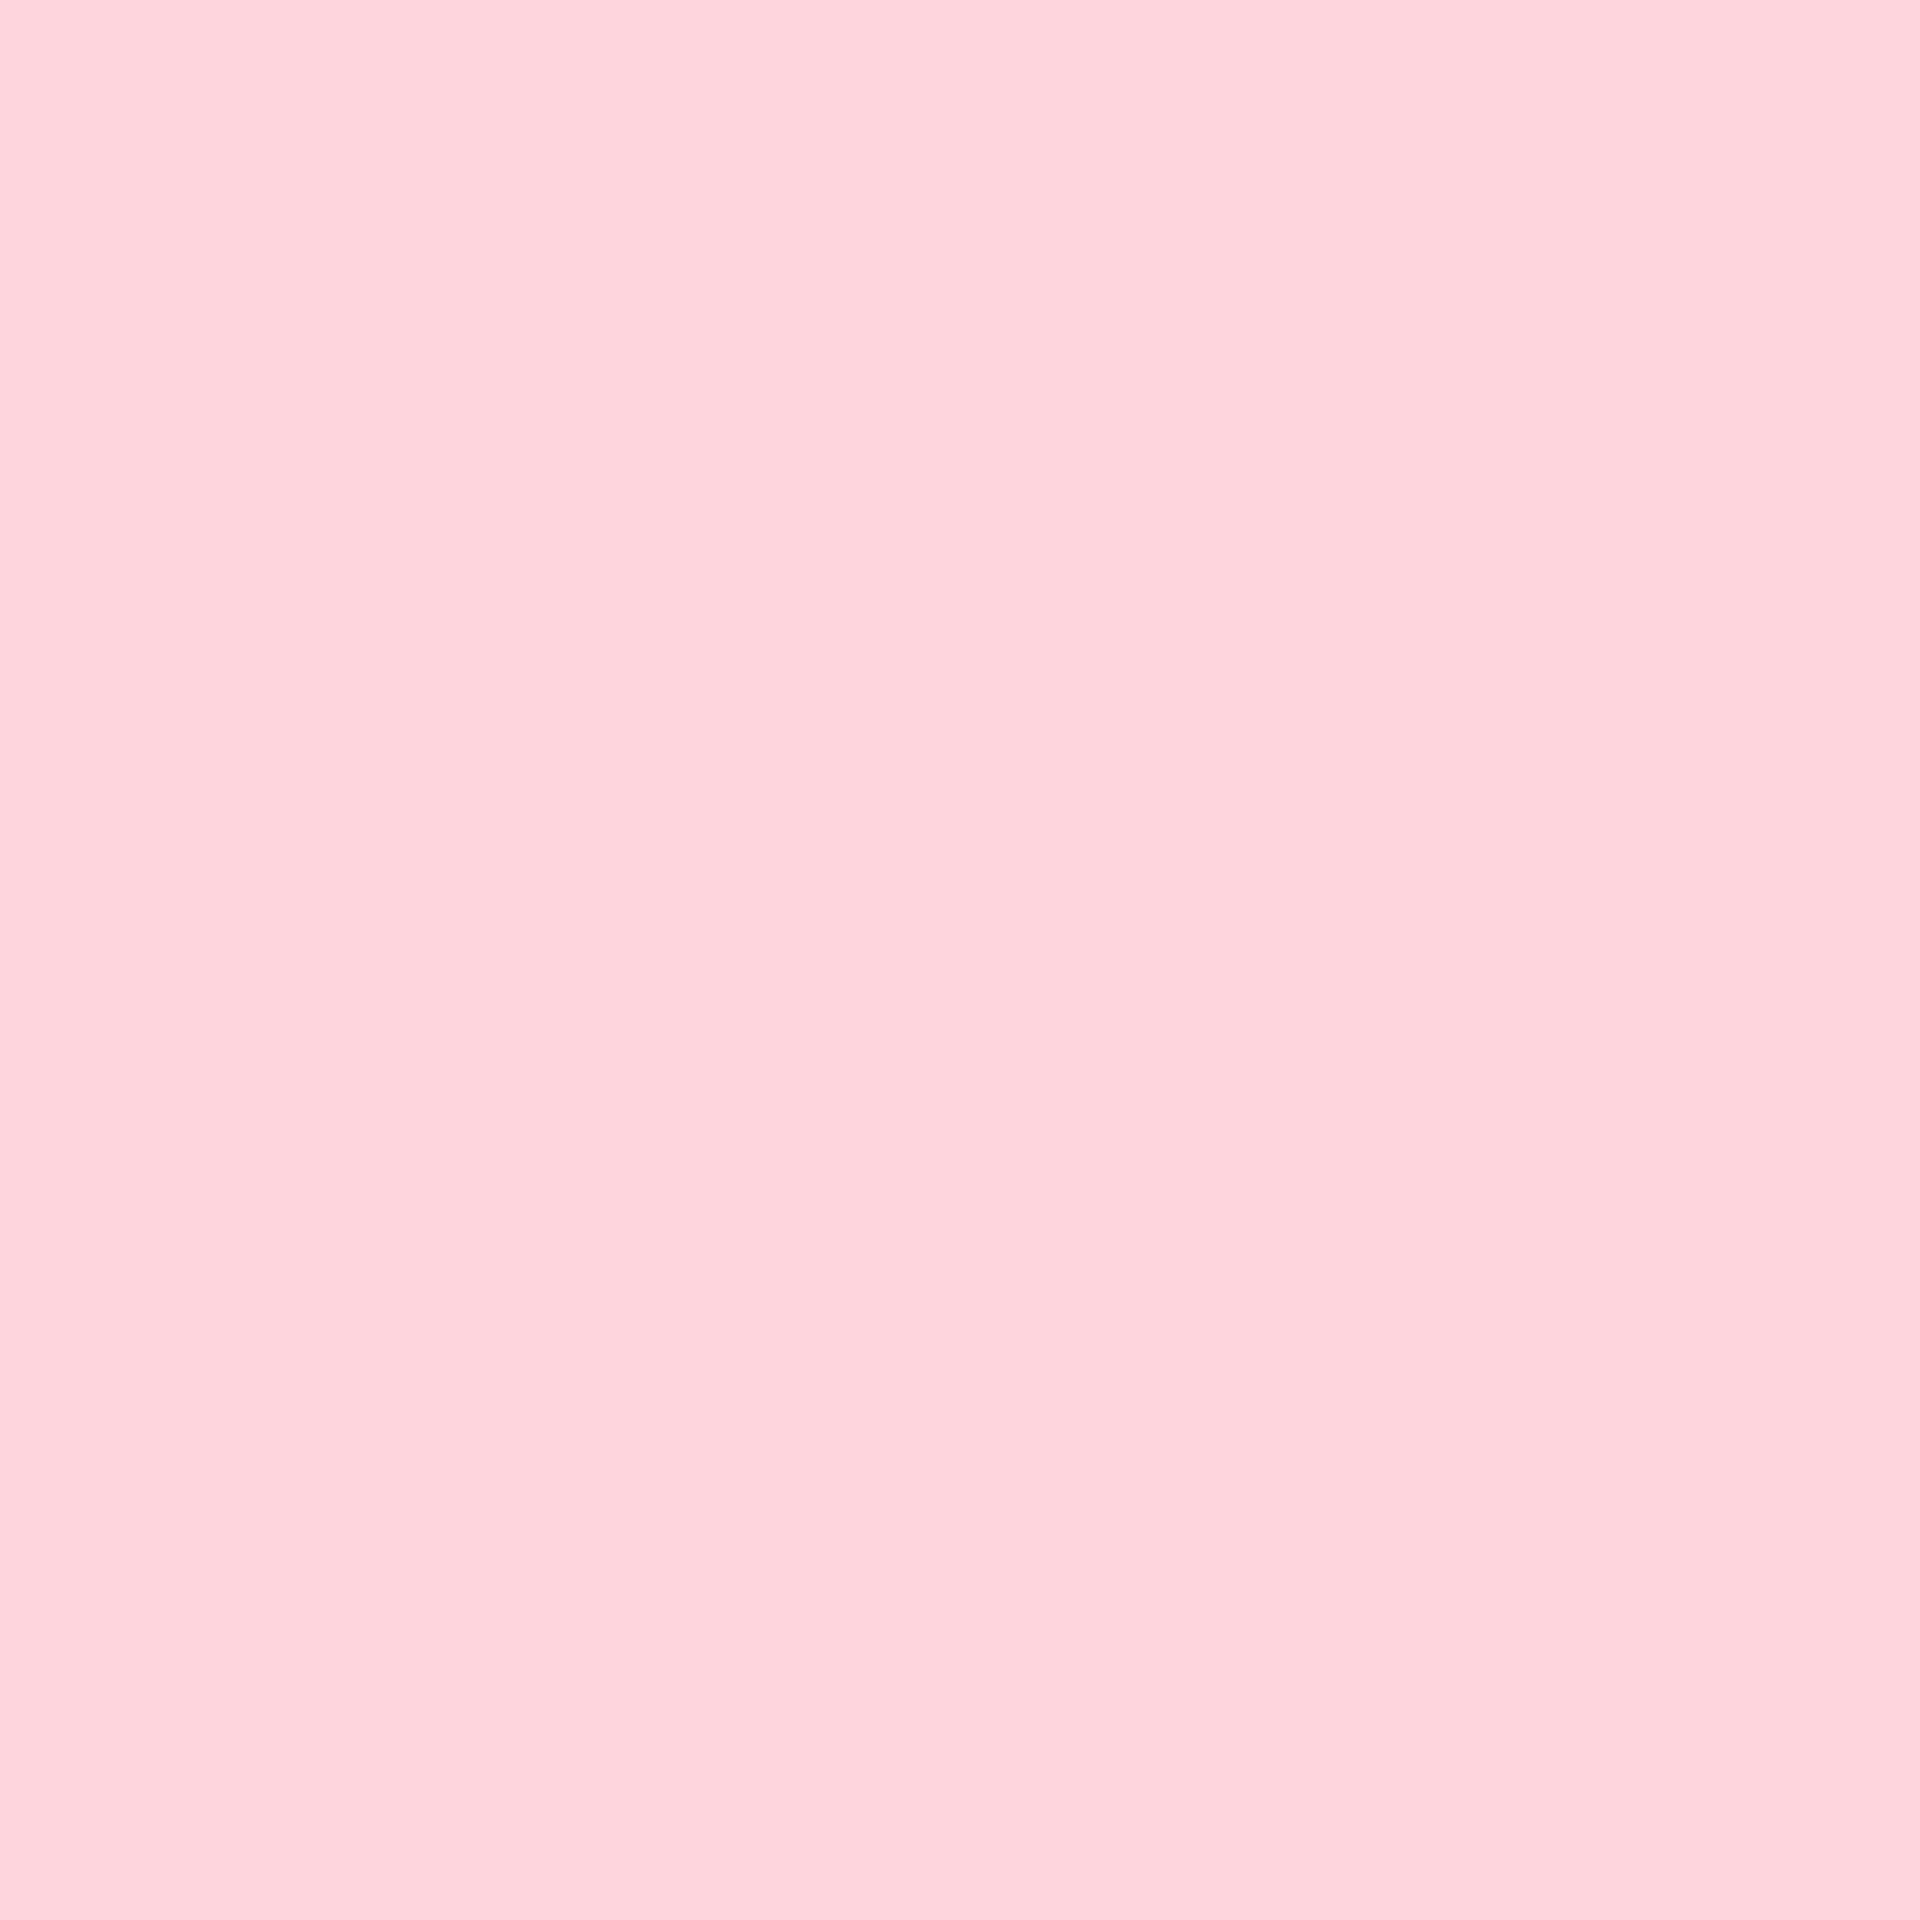 Nền đơn màu hồng miễn phí - [100 +] Đơn màu hồng ... (Free Pink Solid Color Background, [100+] Pink Solid Color): Không phải trả bất kỳ chi phí nào, bạn đã có thể tải về ngay những hình nền đơn màu hồng miễn phí. Với hơn 100 màu hồng khác nhau để lựa chọn, bạn có thể dễ dàng tìm thấy một hình nền phù hợp với phong cách của mình. Hãy xem hình ảnh liên quan để cảm nhận được sự đơn giản và tinh tế của nó!